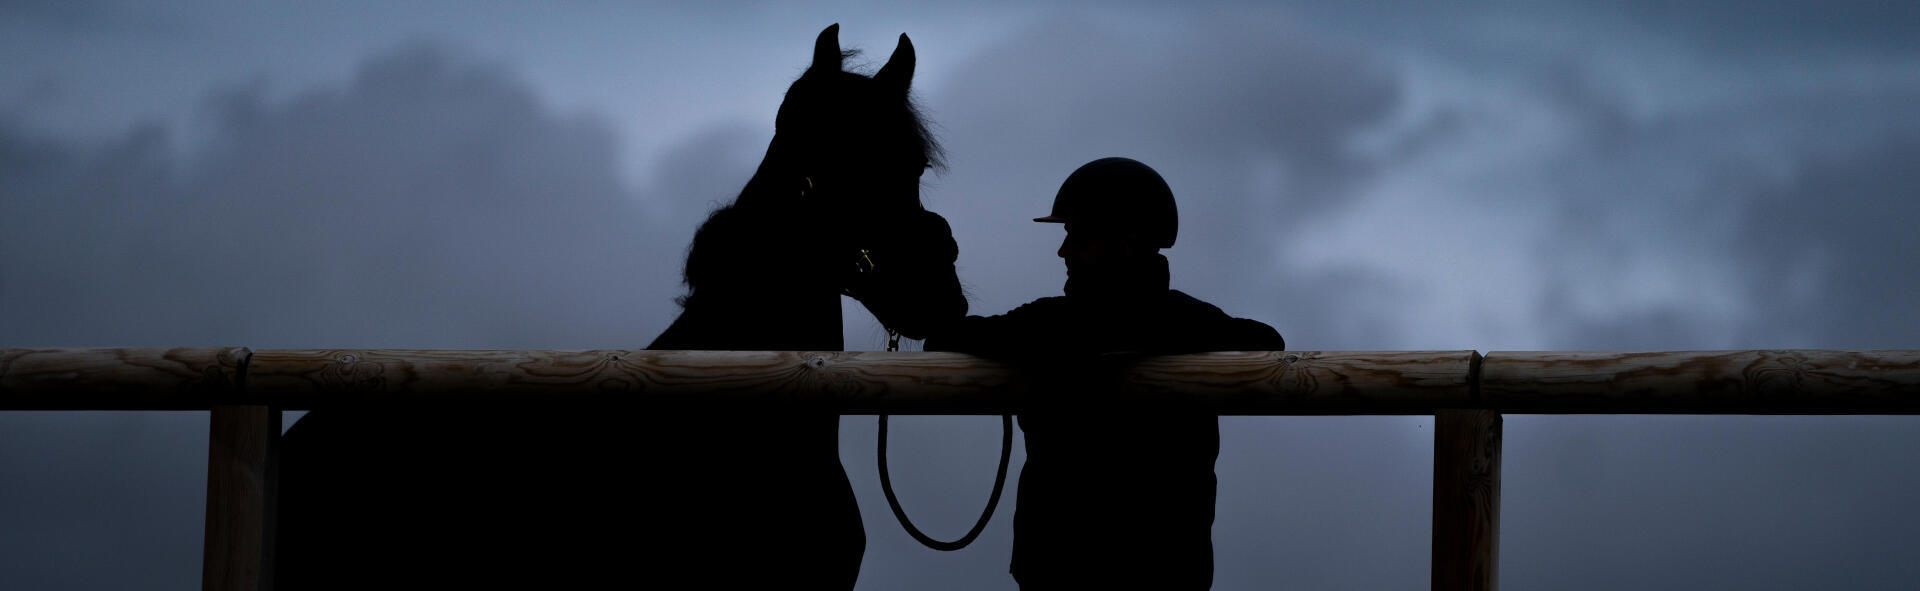 Un cavalier s'appuie sur la barrière en bois de sa carrière gelée, son cheval en longe à côté de lui